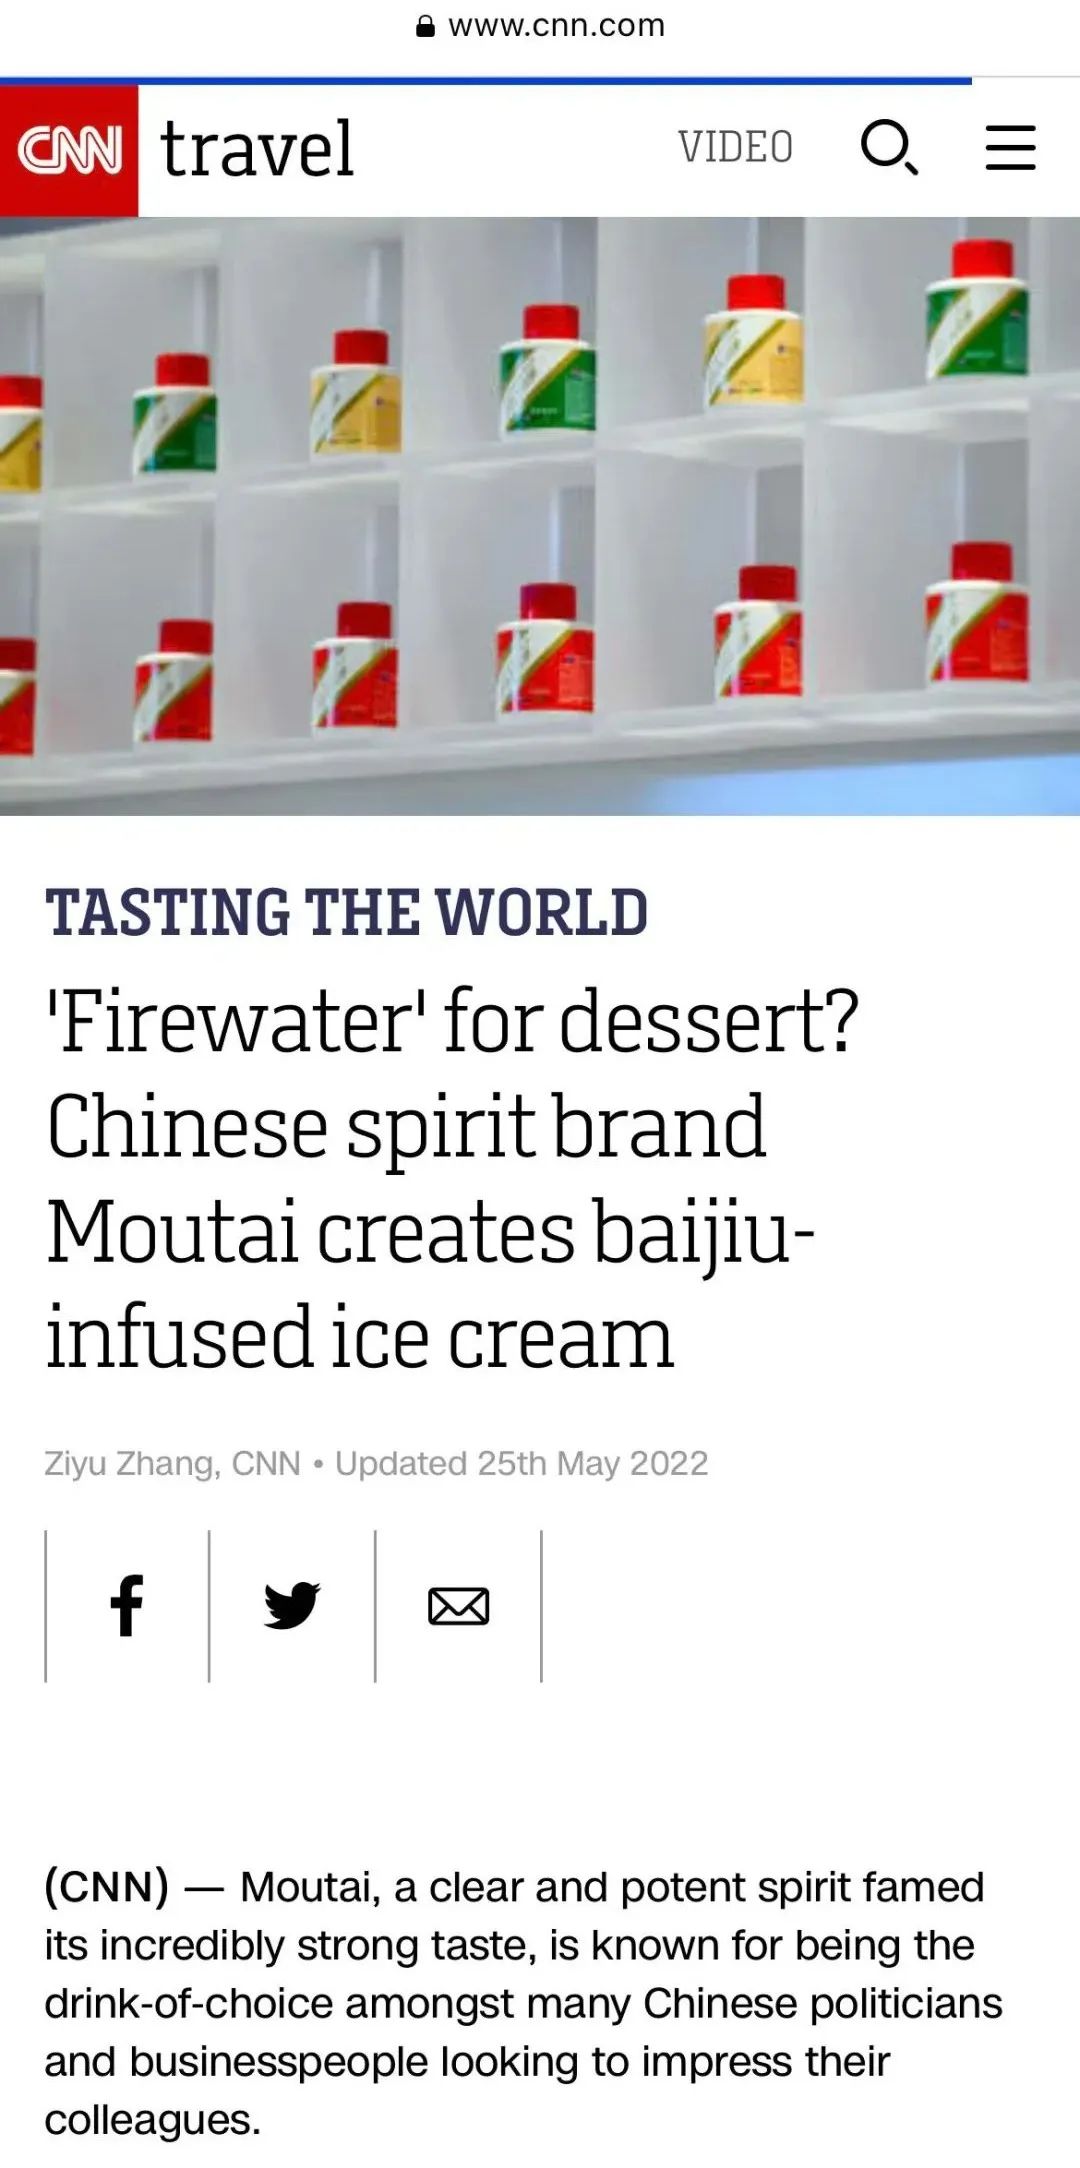 CNN、日经新闻等国际媒体关注茅台冰淇淋：“火酒甜品”扩展年轻粉丝群